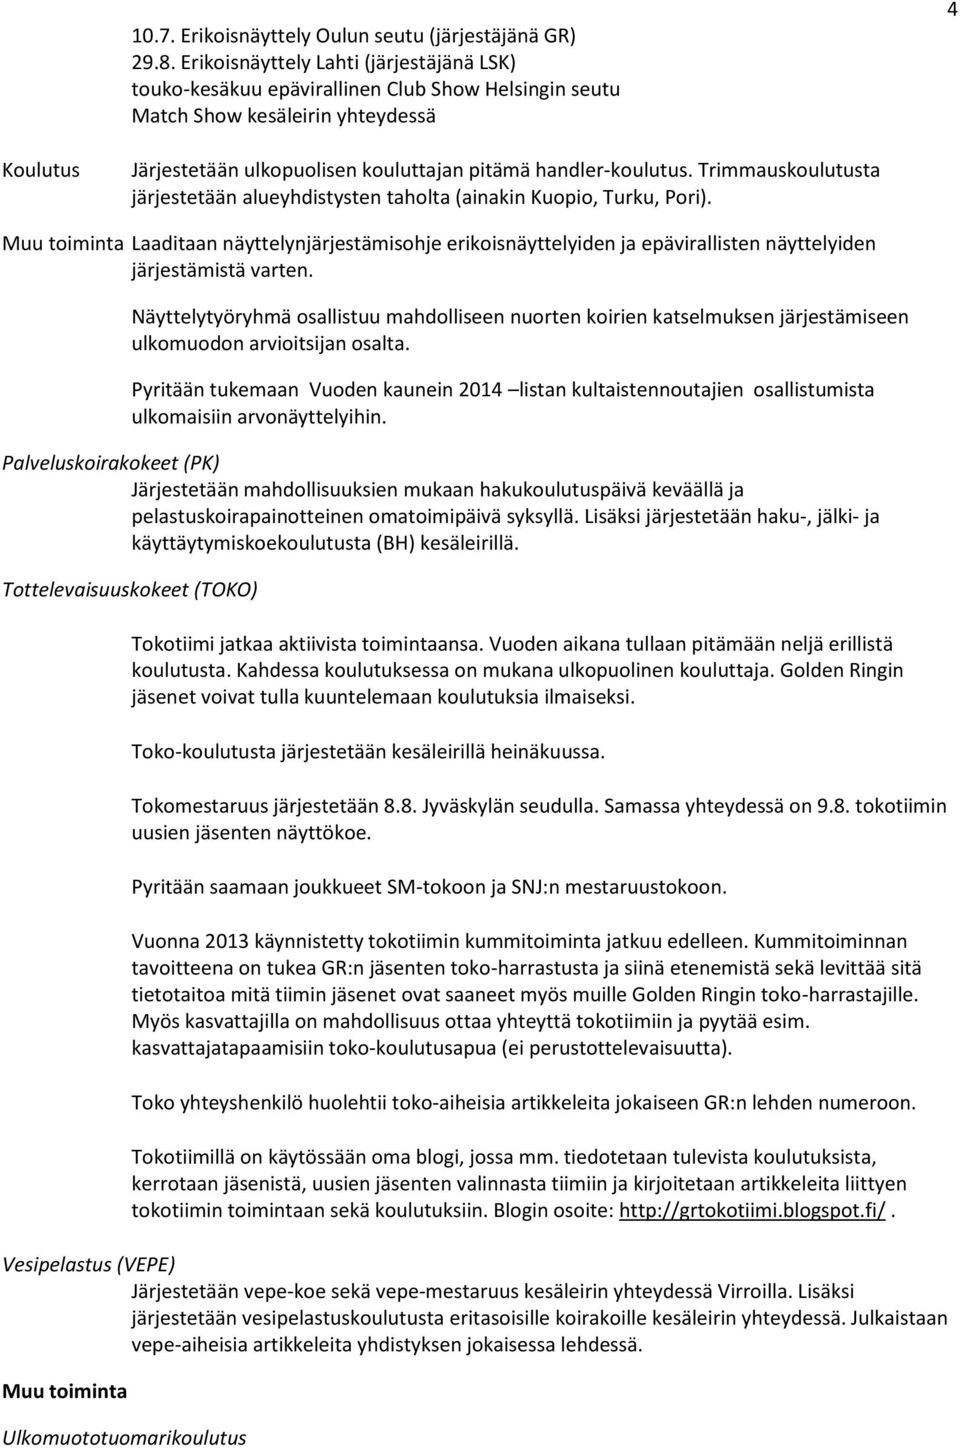 handler-koulutus. Trimmauskoulutusta järjestetään alueyhdistysten taholta (ainakin Kuopio, Turku, Pori).